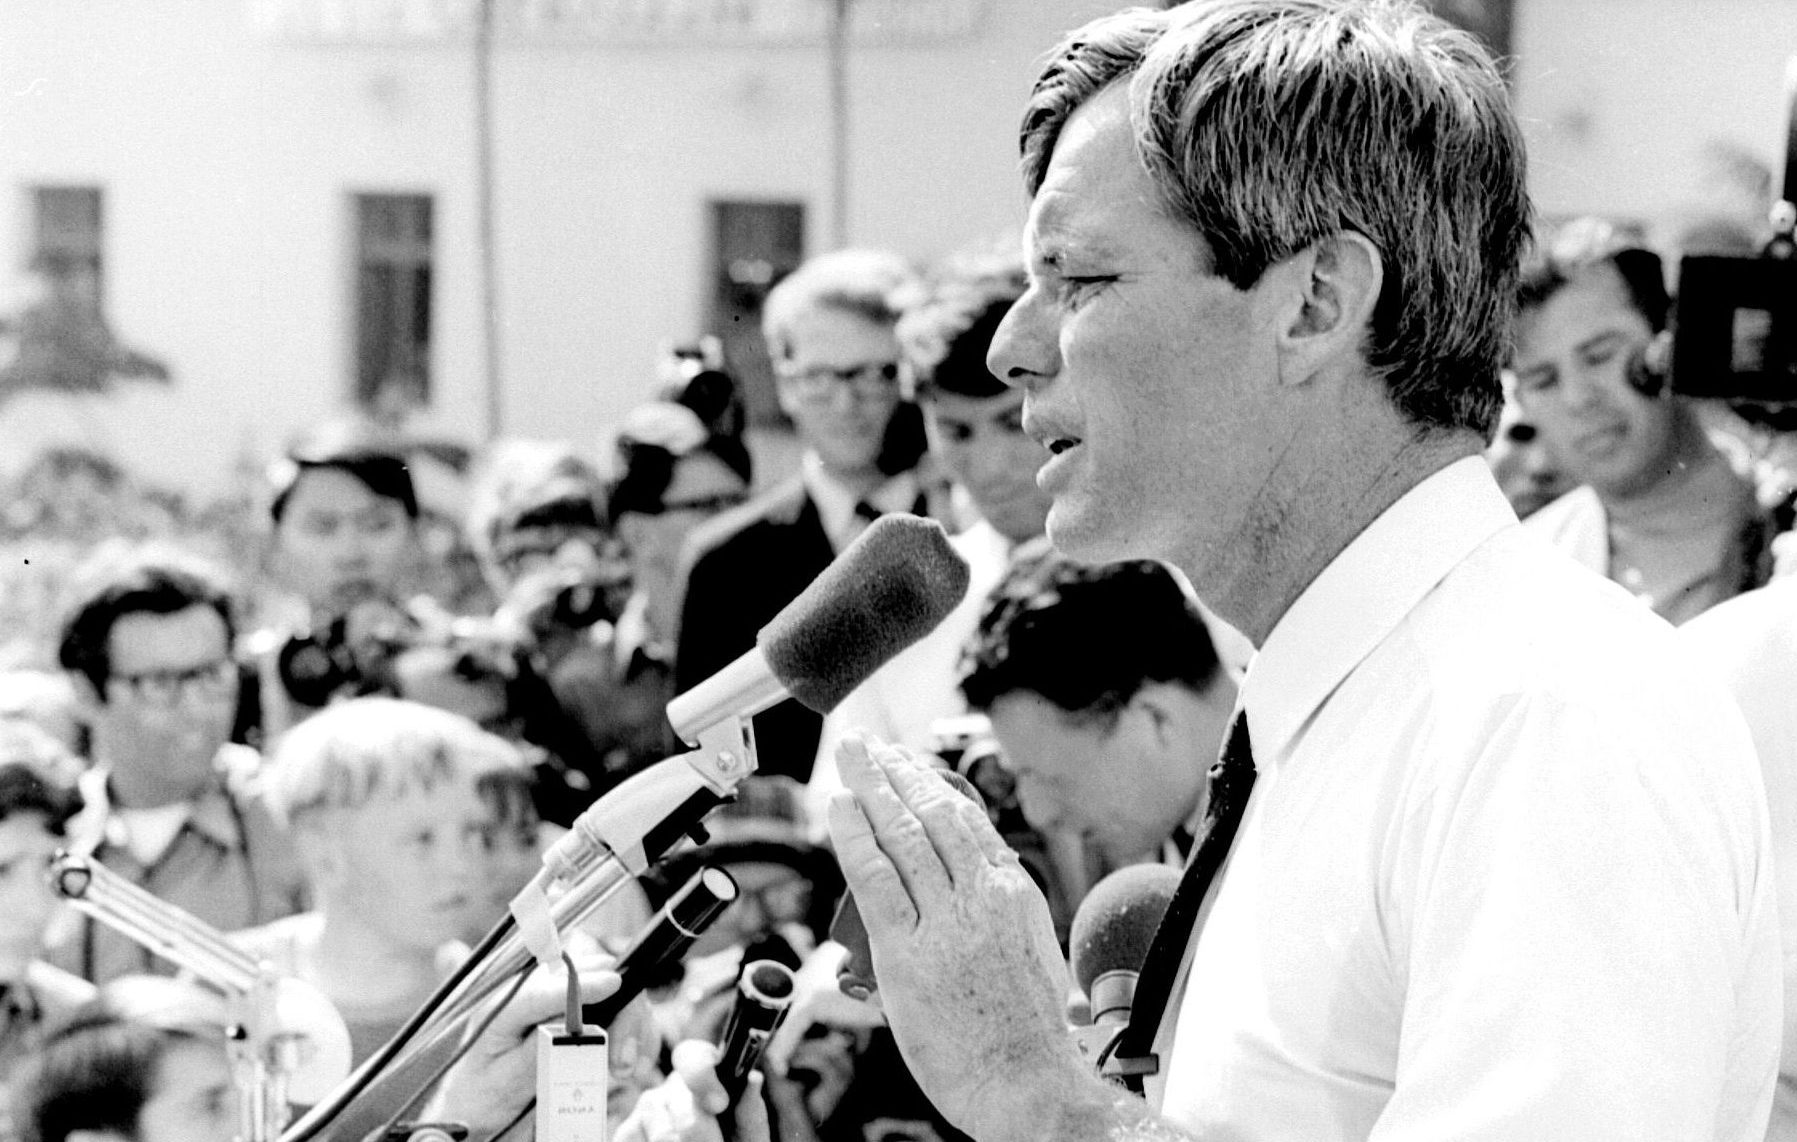 1968 ROBERT F KENNEDY Speaks in Los Angeles PHOTO 154-m 